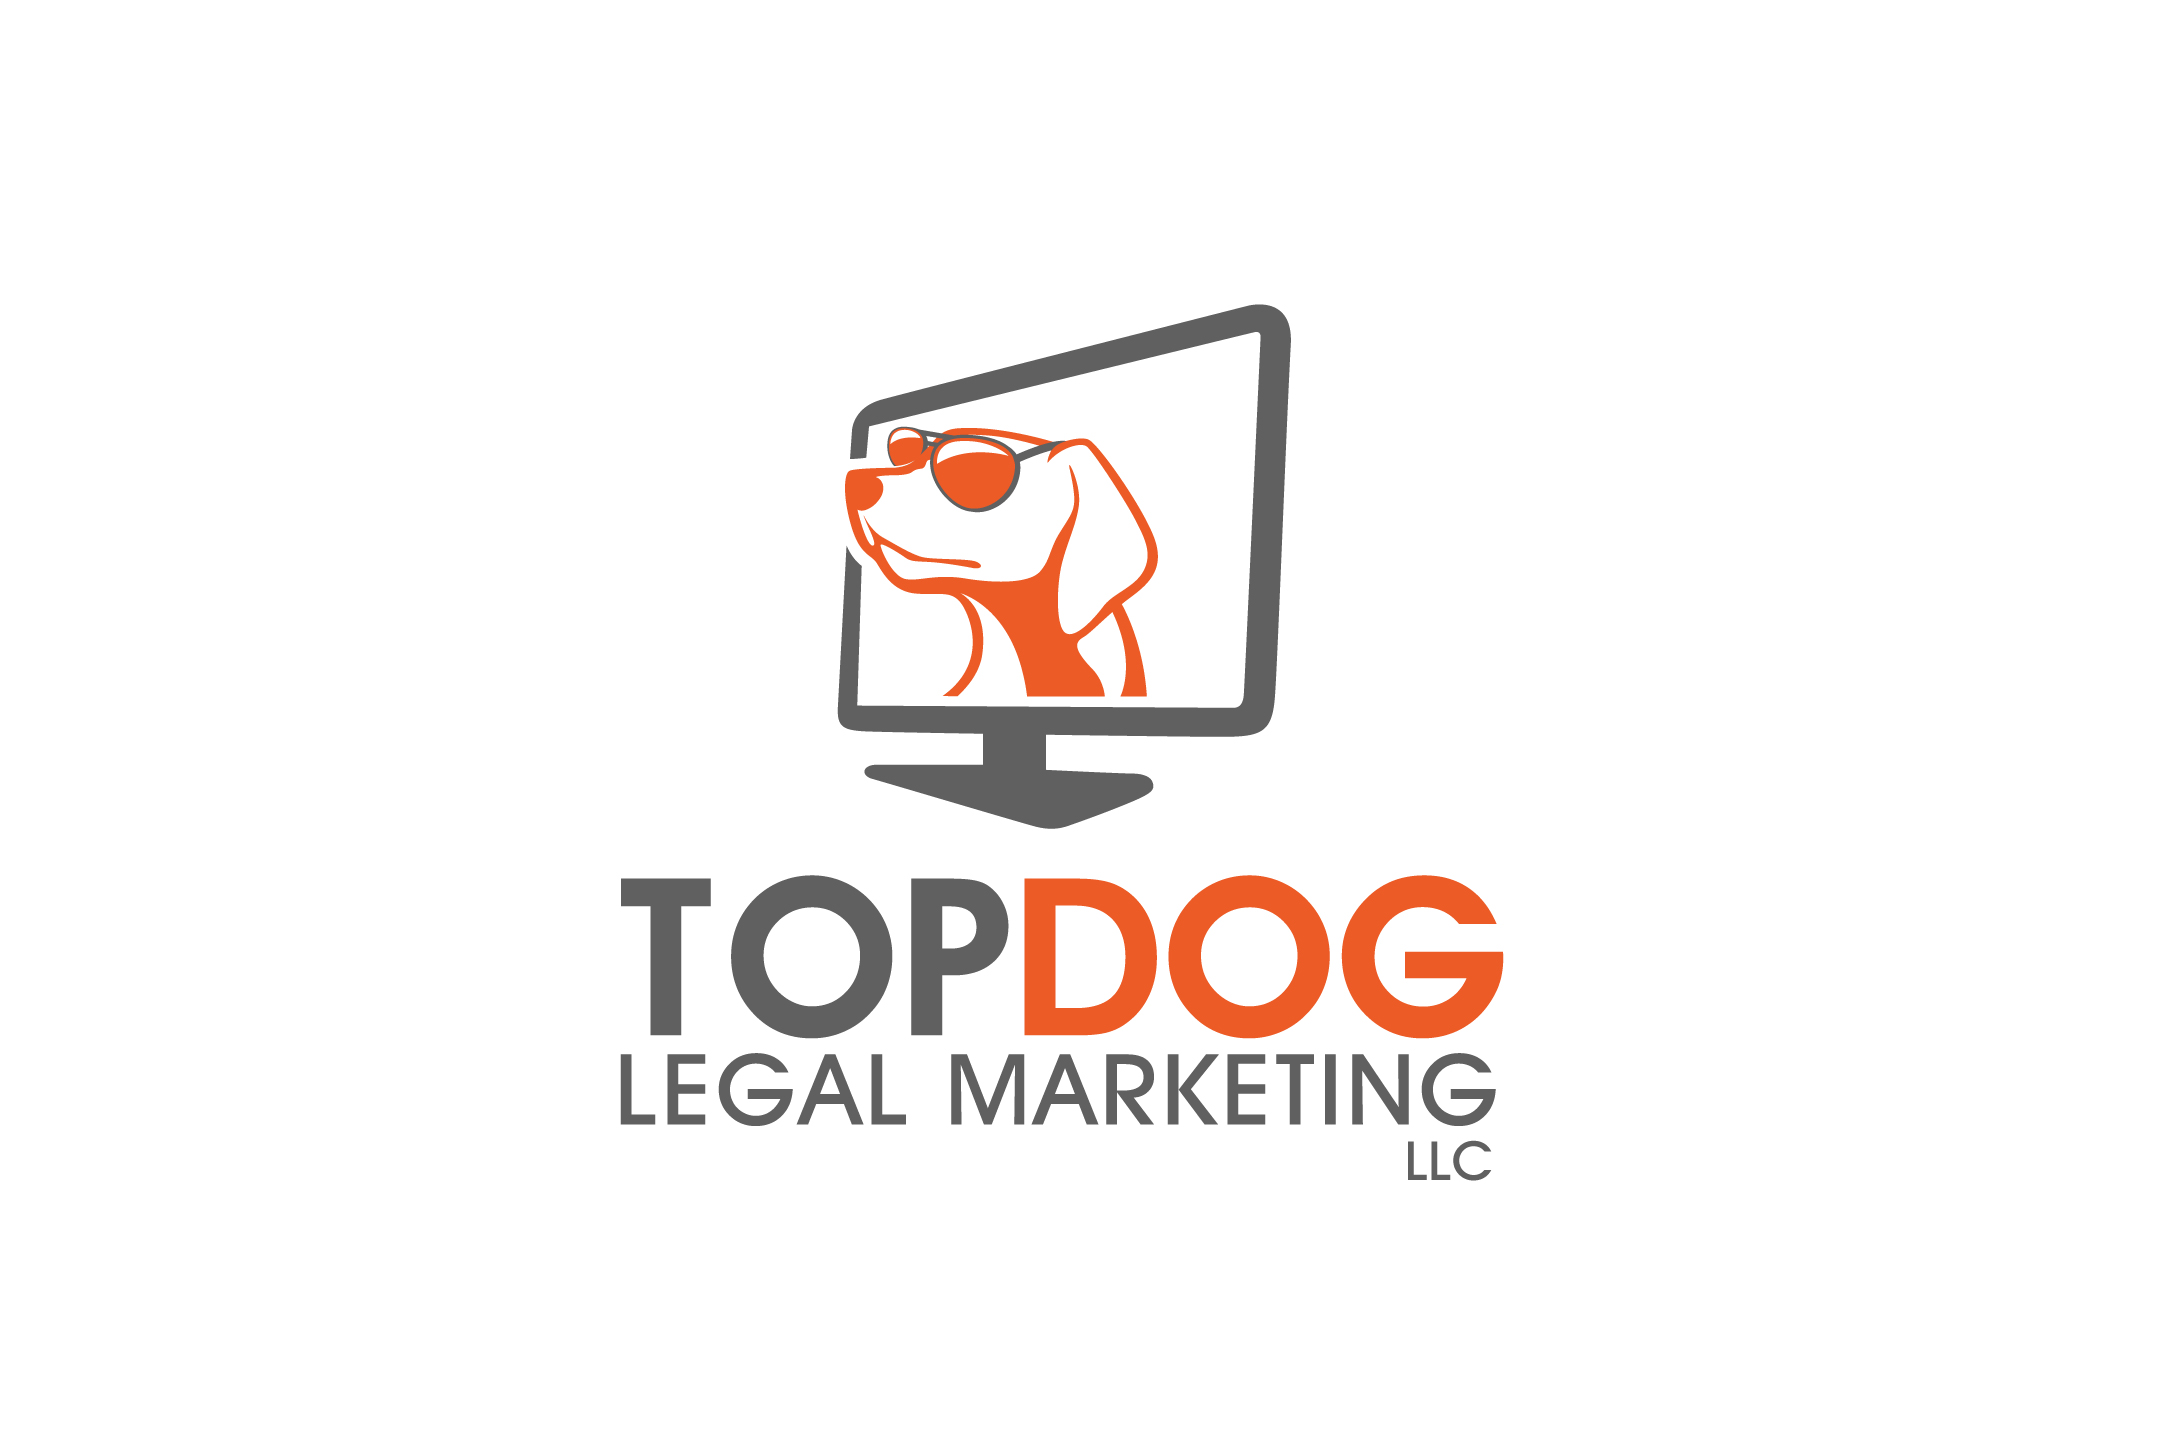 TOPDOG Legal Marketing LLC Logo